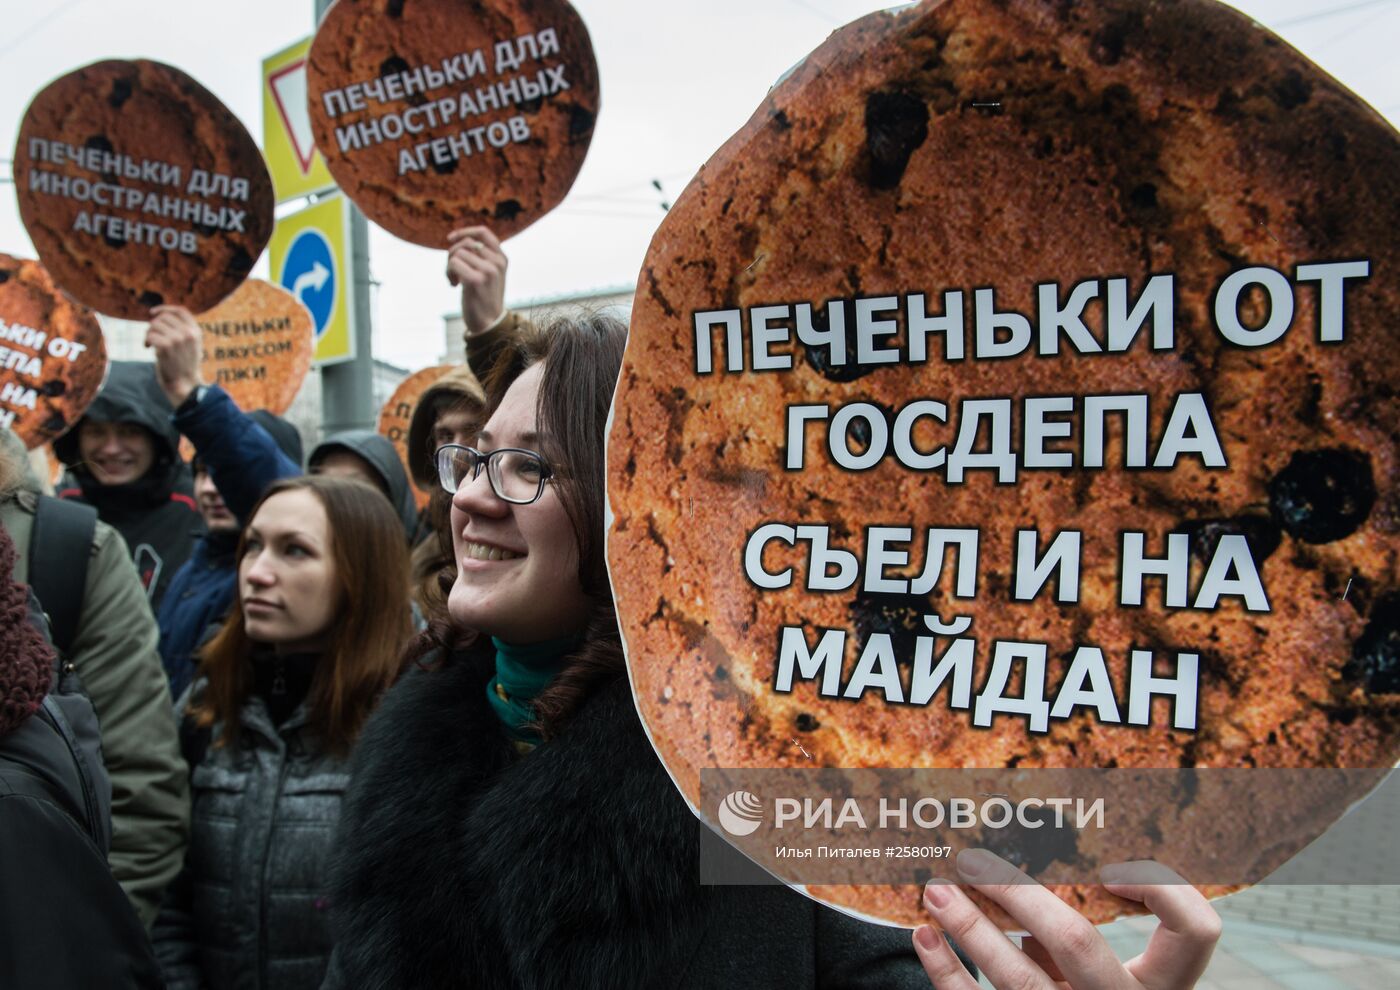 Пикет движения "Антимайдан" напротив офиса "Радио Свобода" в Москве